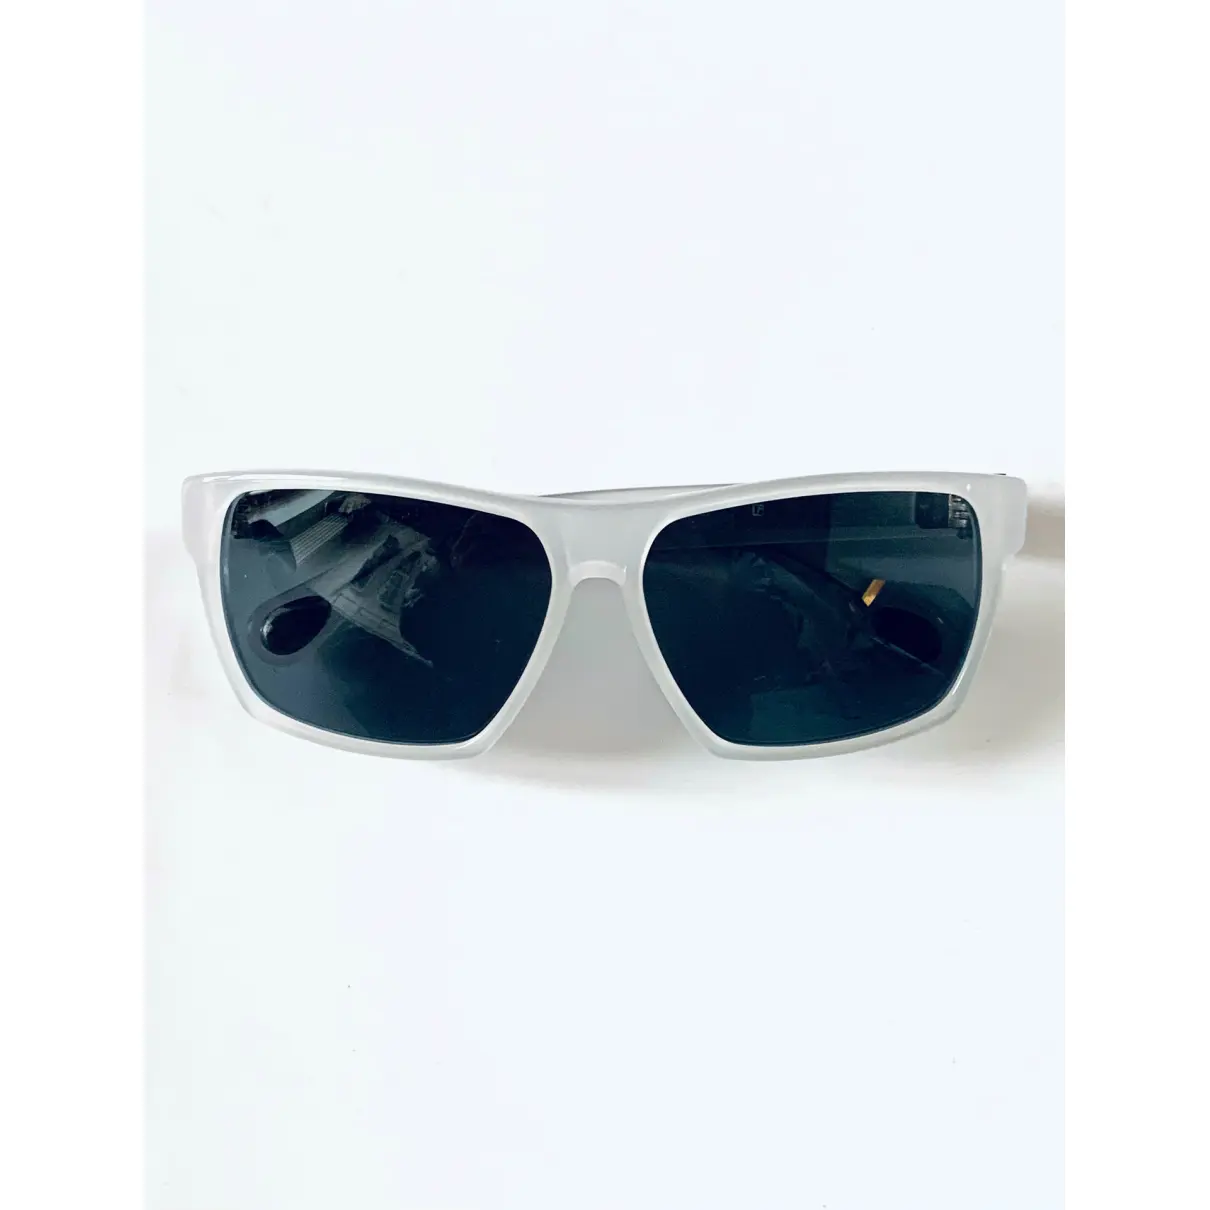 Buy Ann Demeulemeester Sunglasses online